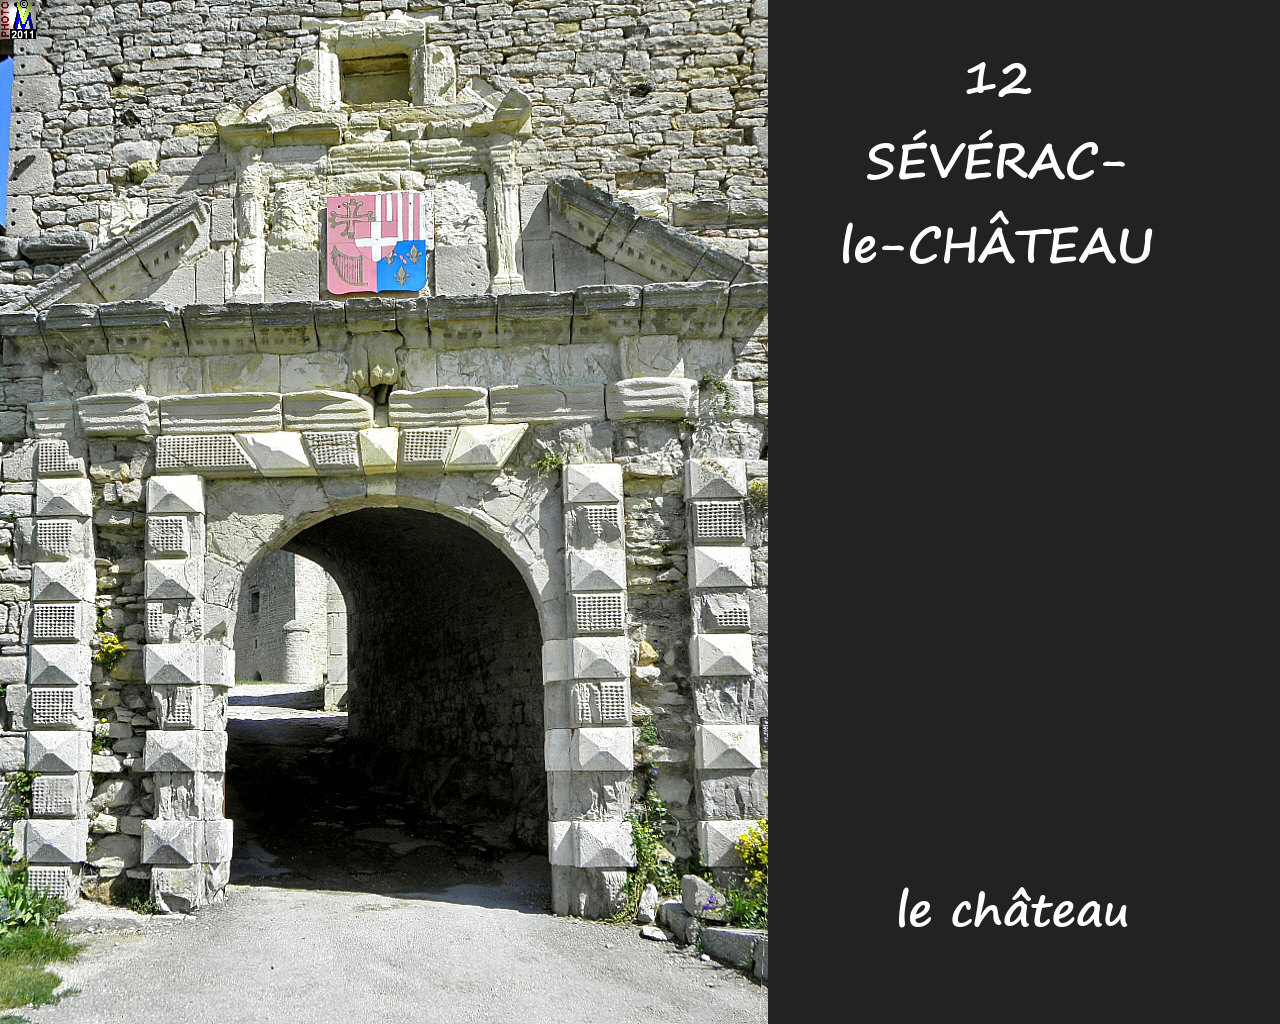 12SEVERAC-CHATEAU_chateau_116.jpg